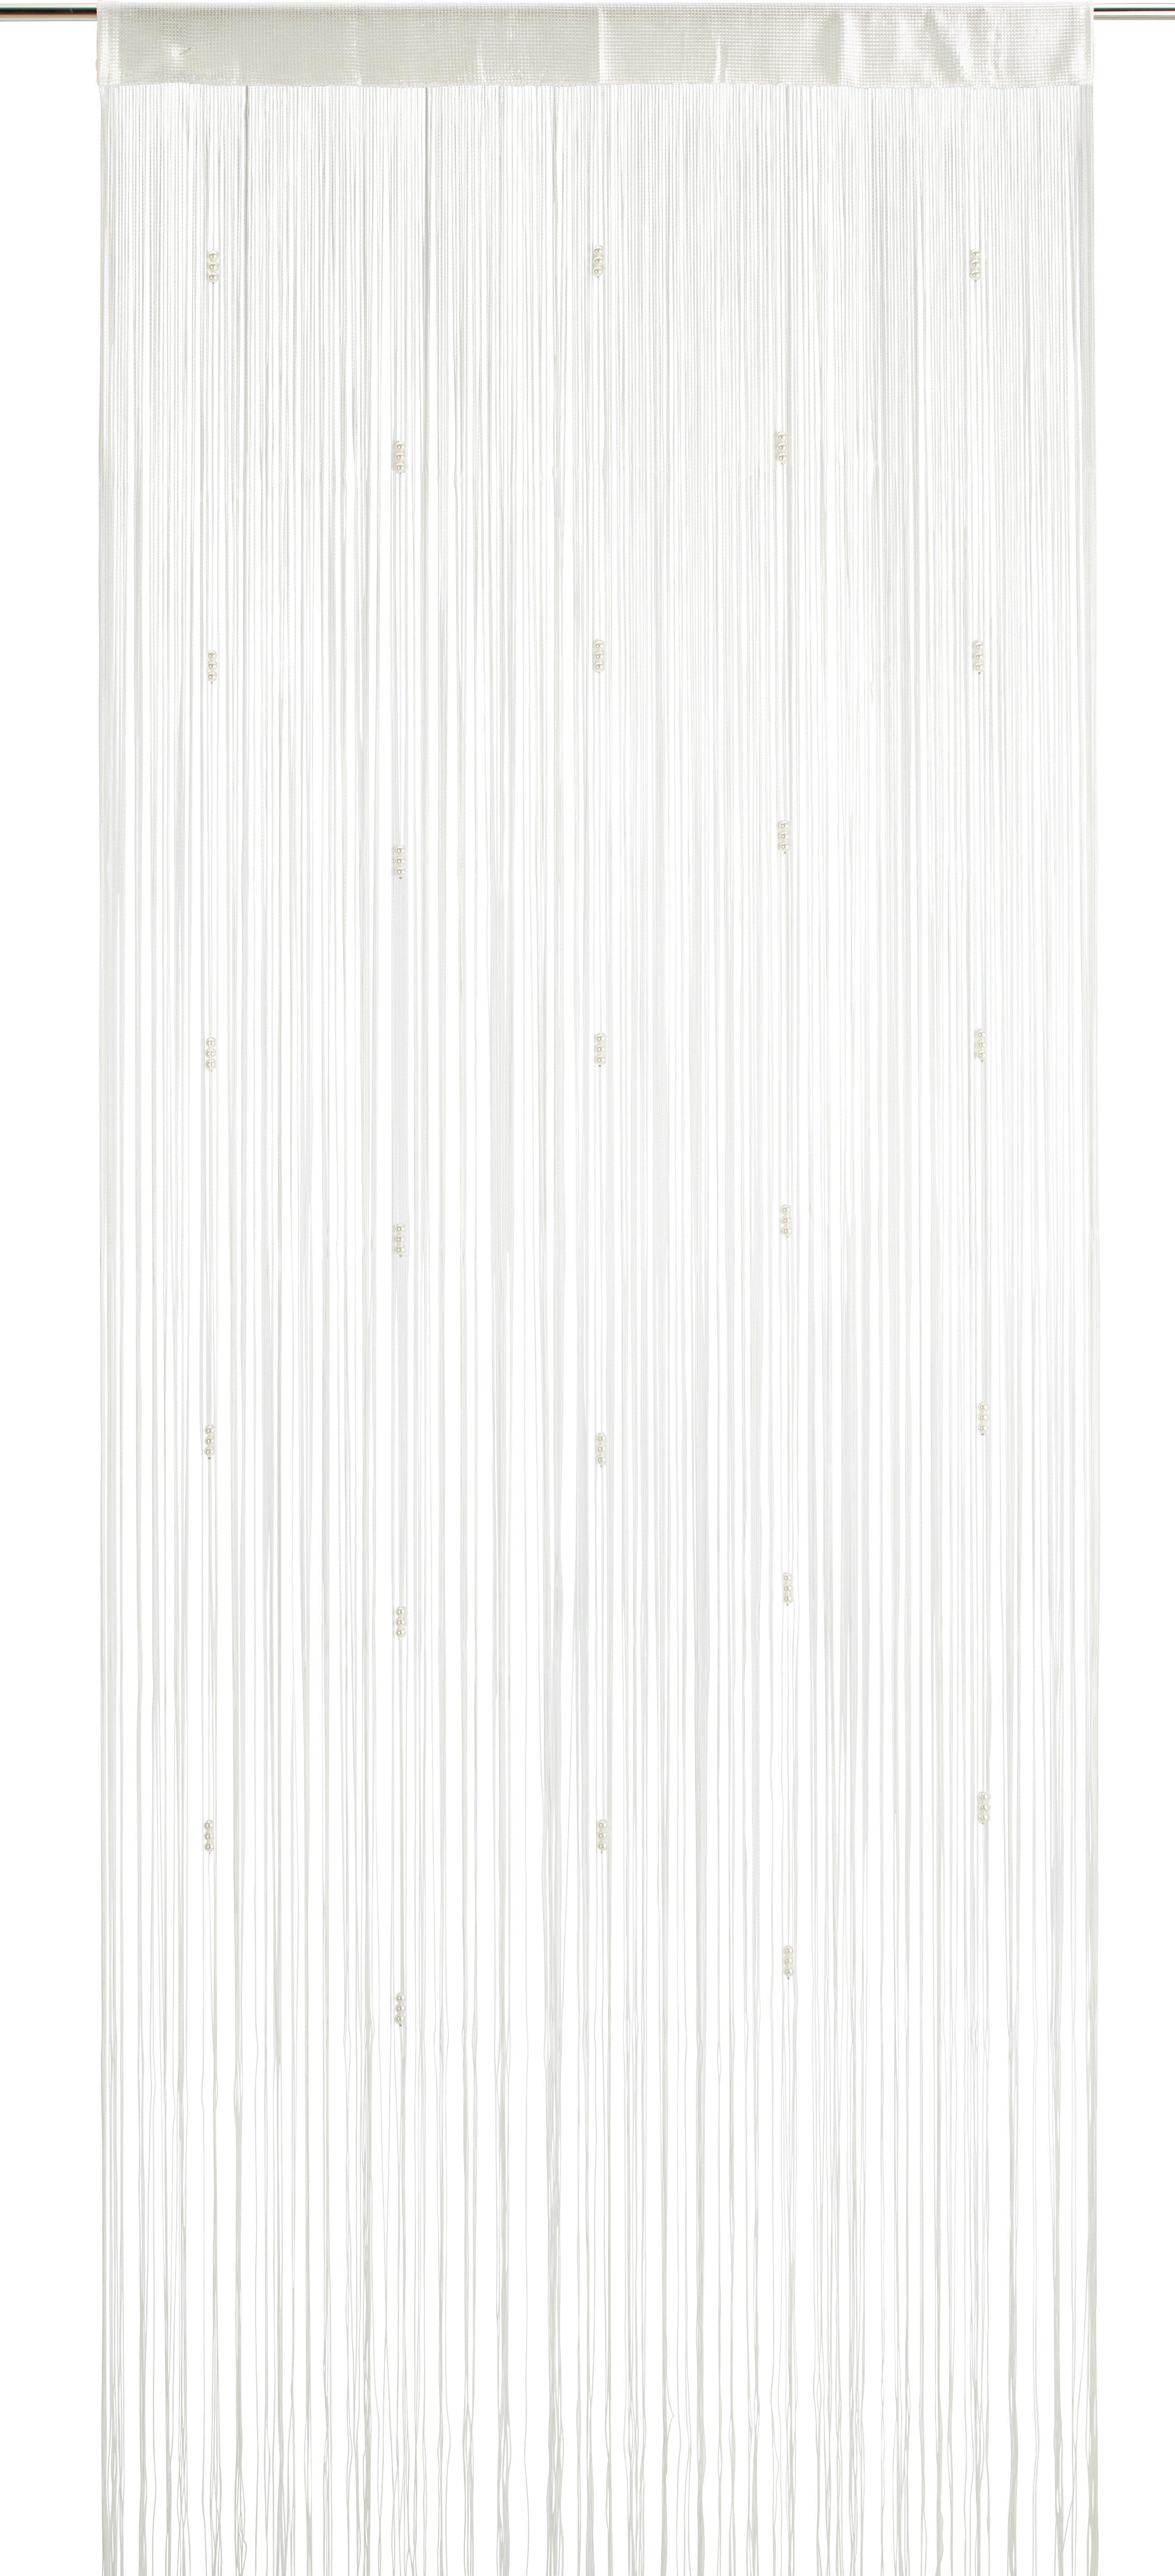 Fadenstore Perle in Weiß ca. 90x245cm - Weiß, ROMANTIK / LANDHAUS, Textil (90/245cm) - Modern Living